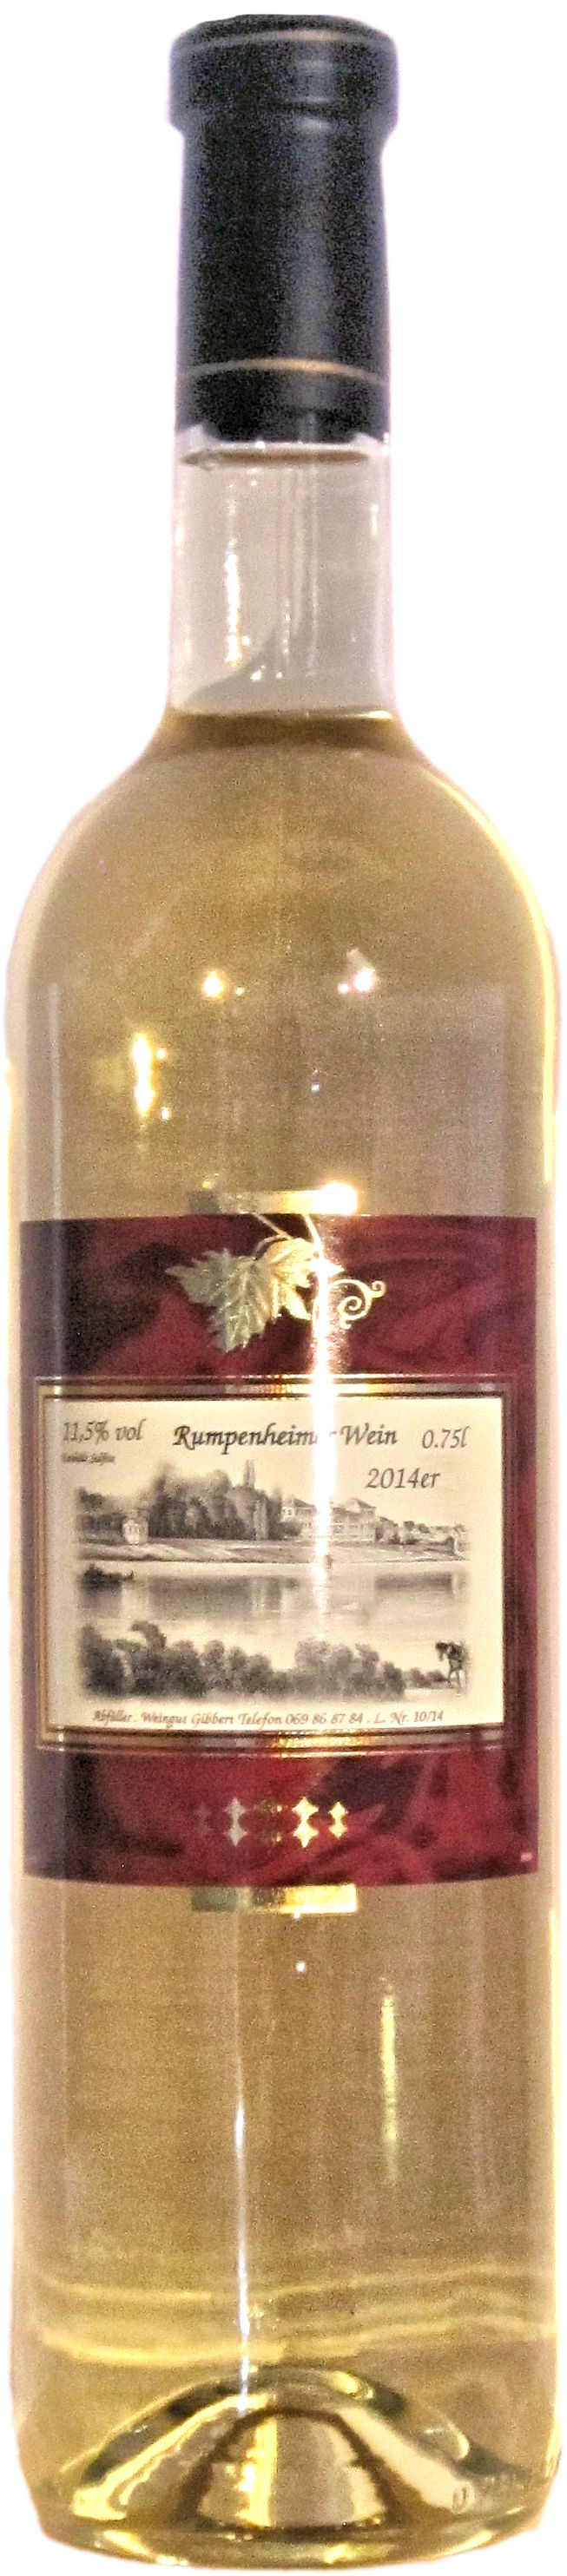 Offenbacher Wein 0.75l